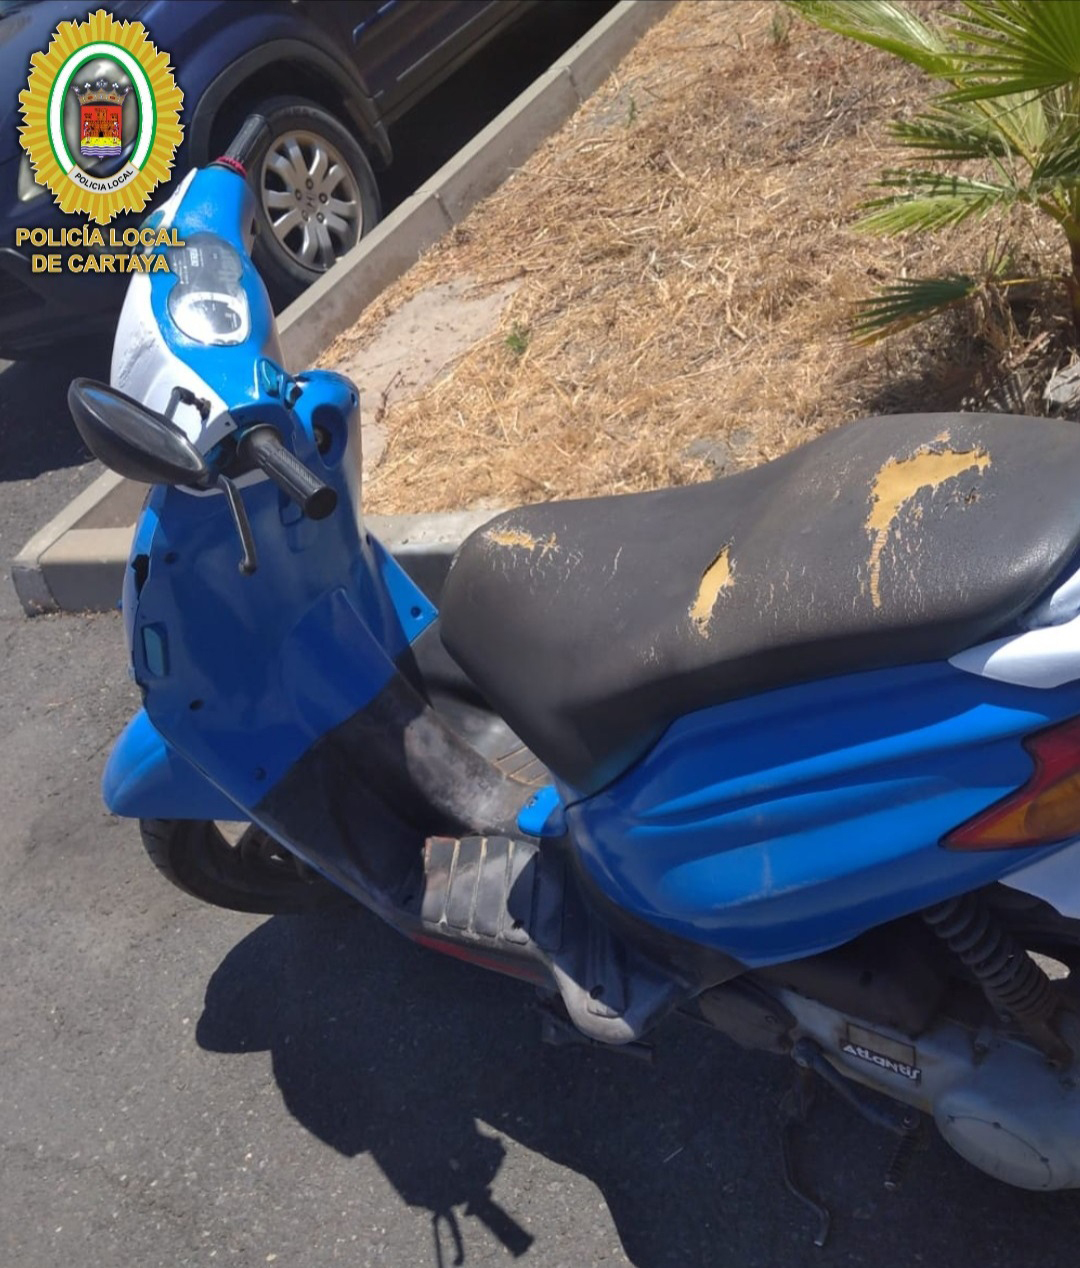 Nueva actuación de la Policía Local de Cartaya para recuperar un vehículo robado, en este caso un ciclomotor.